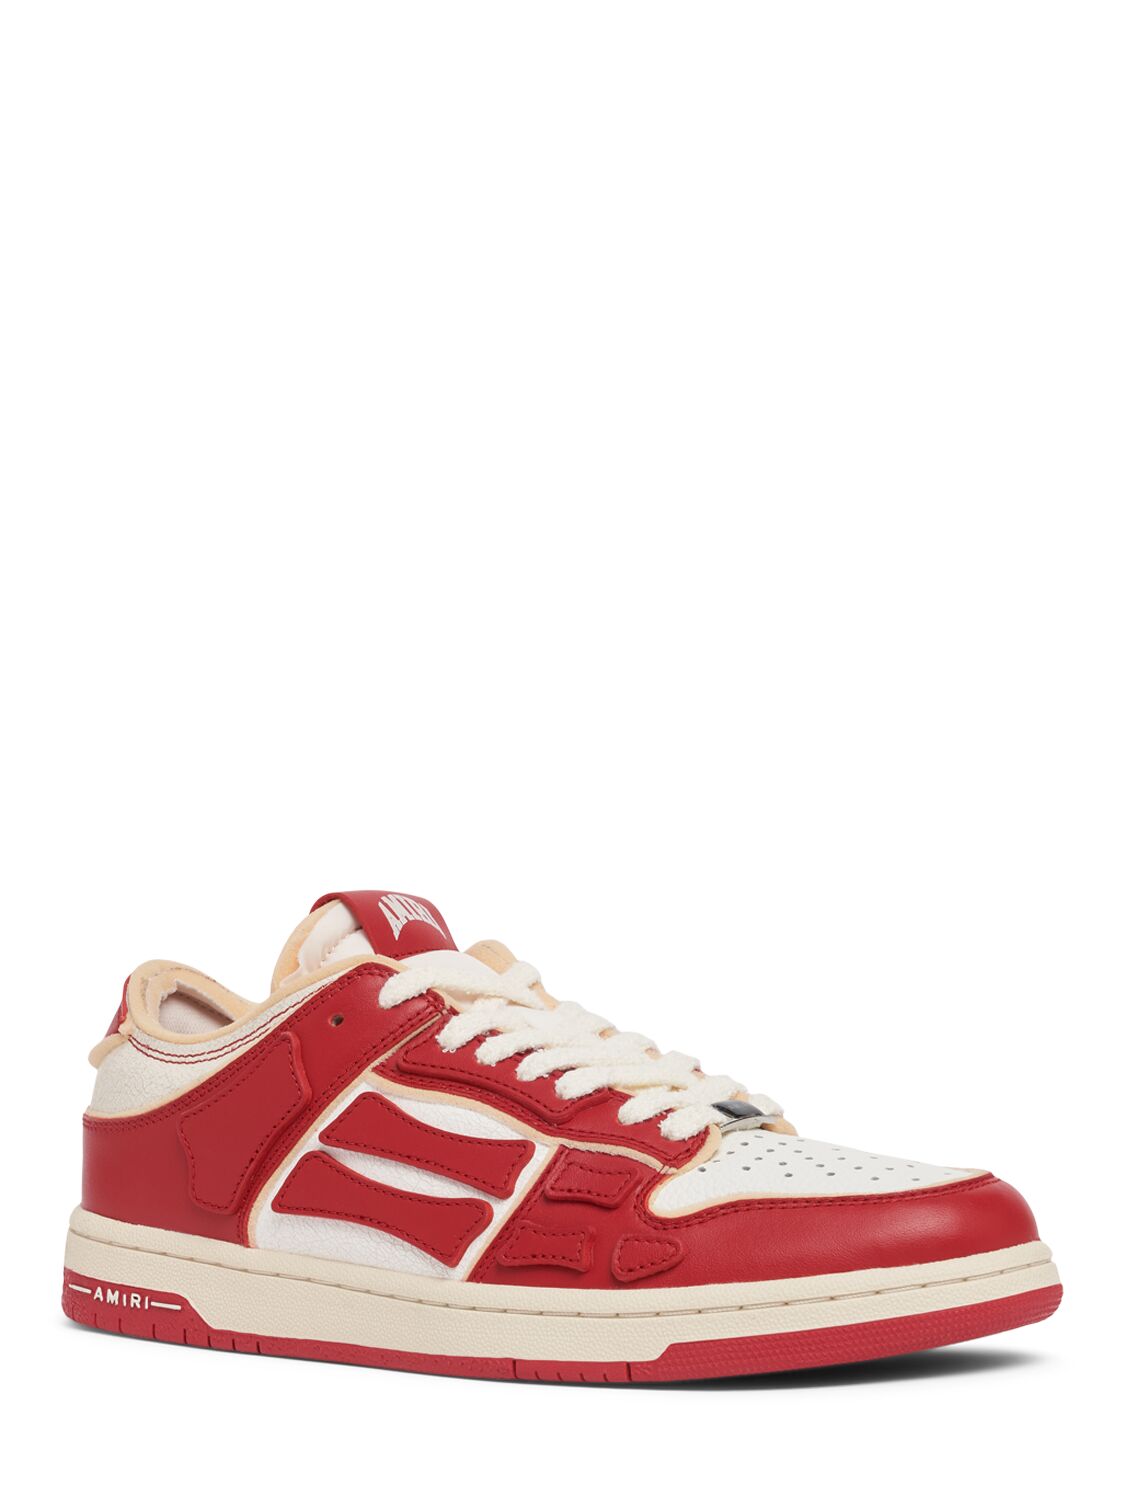 Shop Amiri Collegiate Skel Top Low Sneakers In Red/white